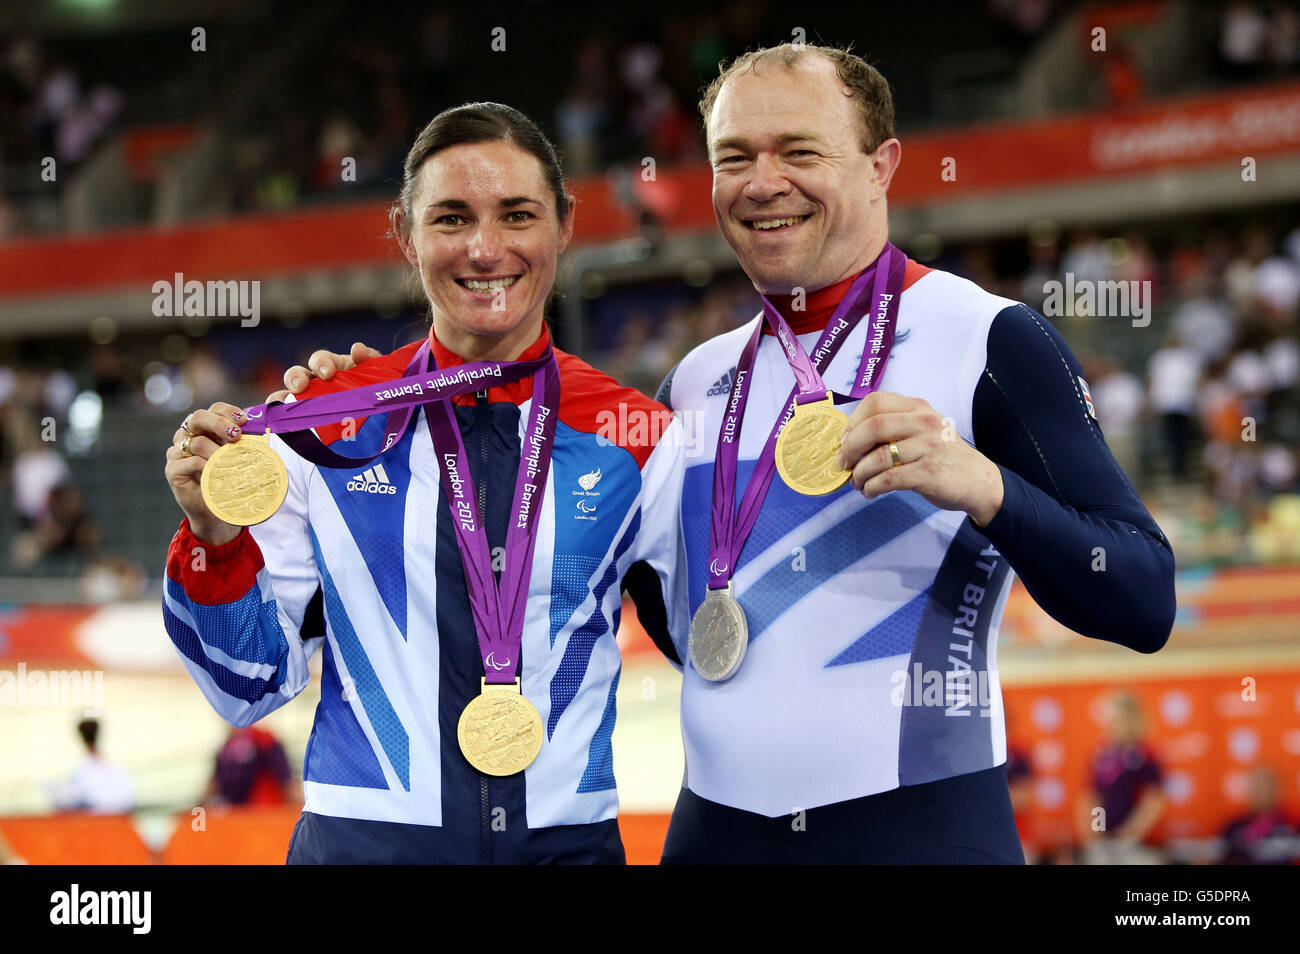 Jeux paralympiques de Londres - jour 4.Sarah et Barney Story posent avec leurs médailles remportées lors de la piste paralympique de vélo au Velodrome dans le Parc Olympique, Londres. Banque D'Images